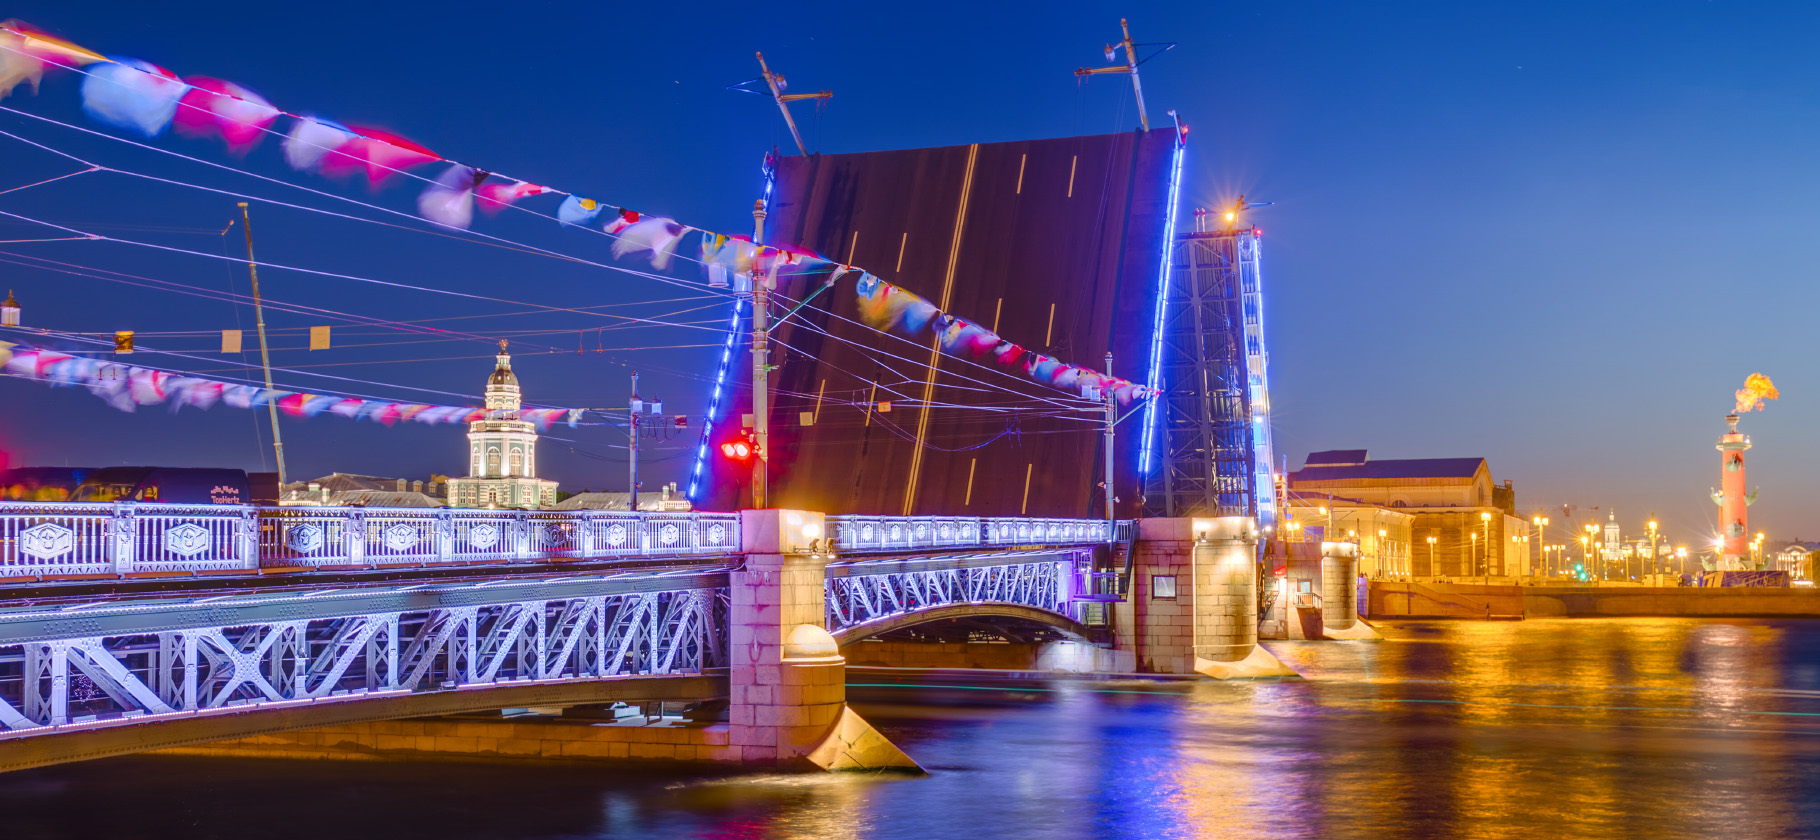 Ползком по барам и развод мостов: 20 интересных экскурсий в Петербурге